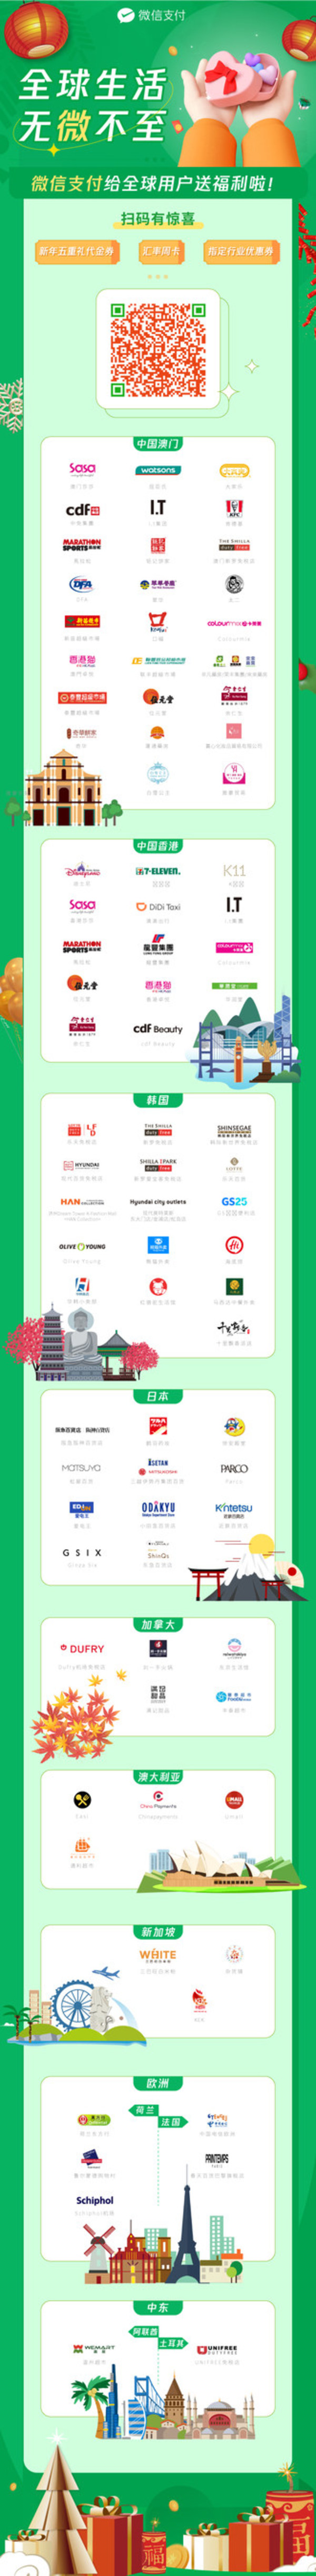 Intellasia East Asia News – Penawaran Luar Biasa untuk Pengguna Weixin Pay di Hampir Satu Juta Merchant di Seluruh Dunia